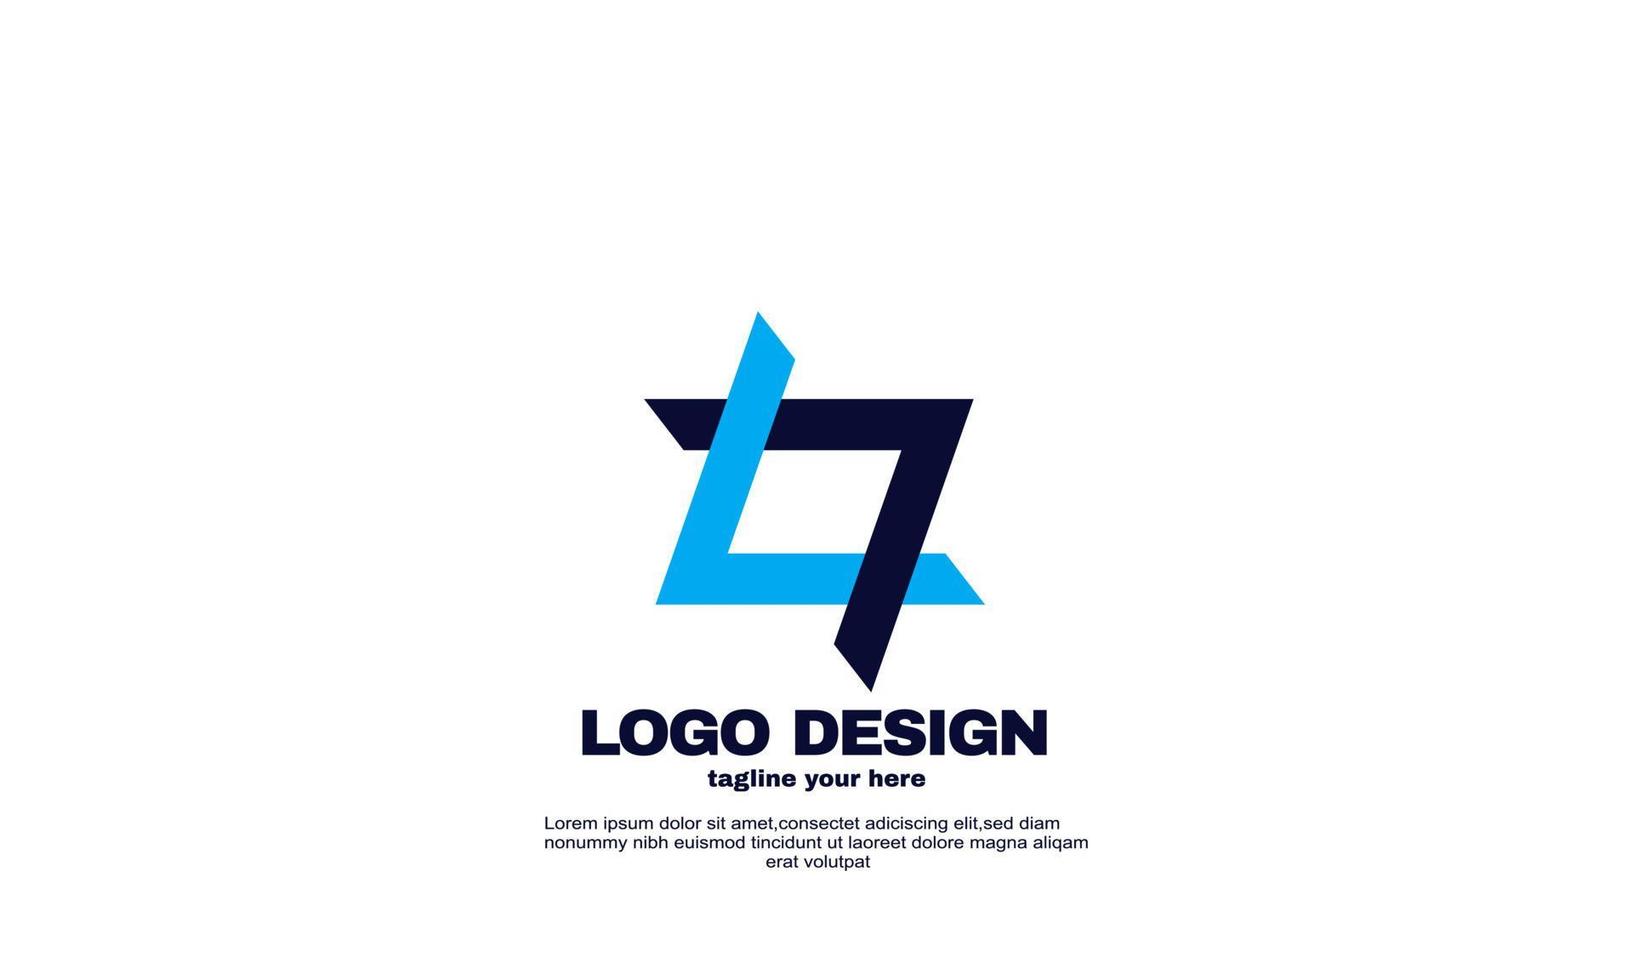 incrível empresa de logotipo de rede moderna e vetor de design de marca